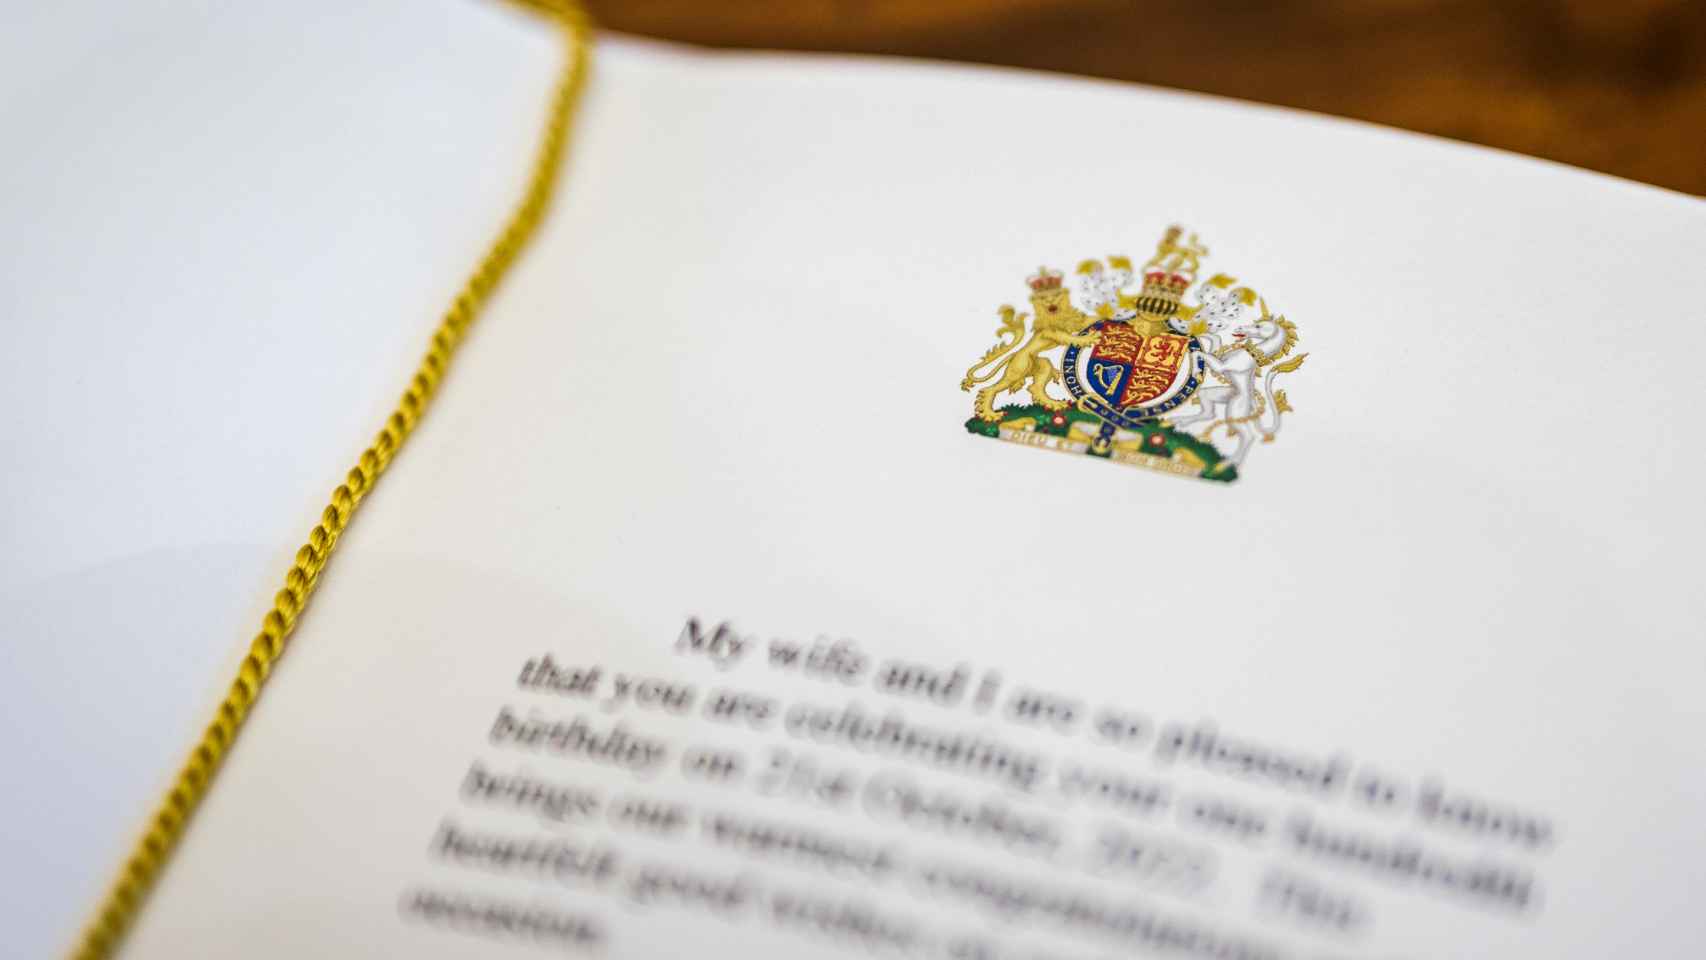 Mensaje escrito en una de las felicitaciones enviadas por el rey Carlos y la reina consorte Camilla.